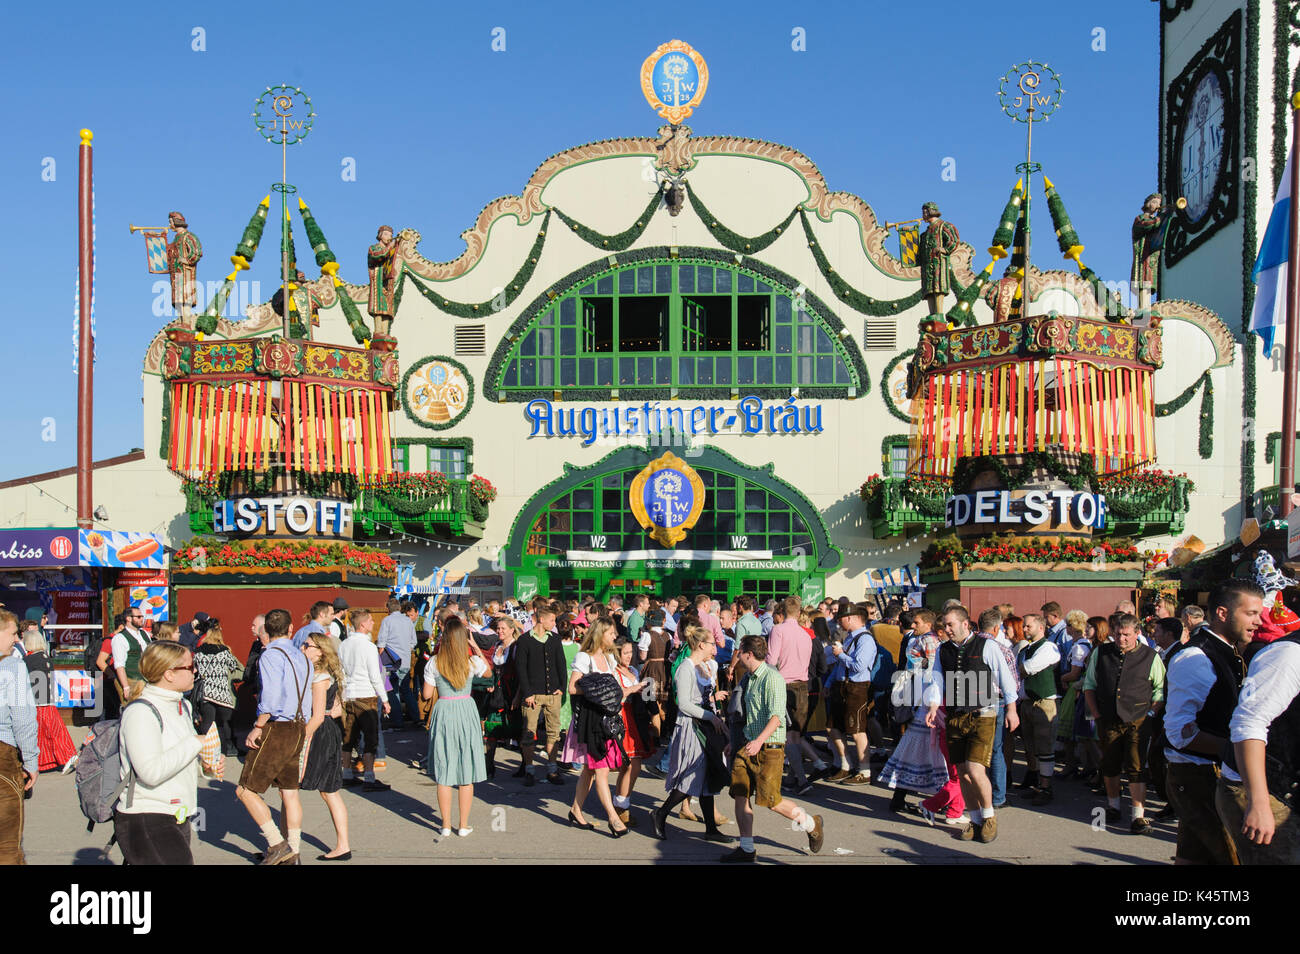 Das Oktoberfest in München ist das größte Volksfest der Welt mit vielen riesigen Bierzelten, Karussells, und Belustigung Hütten Stockfoto